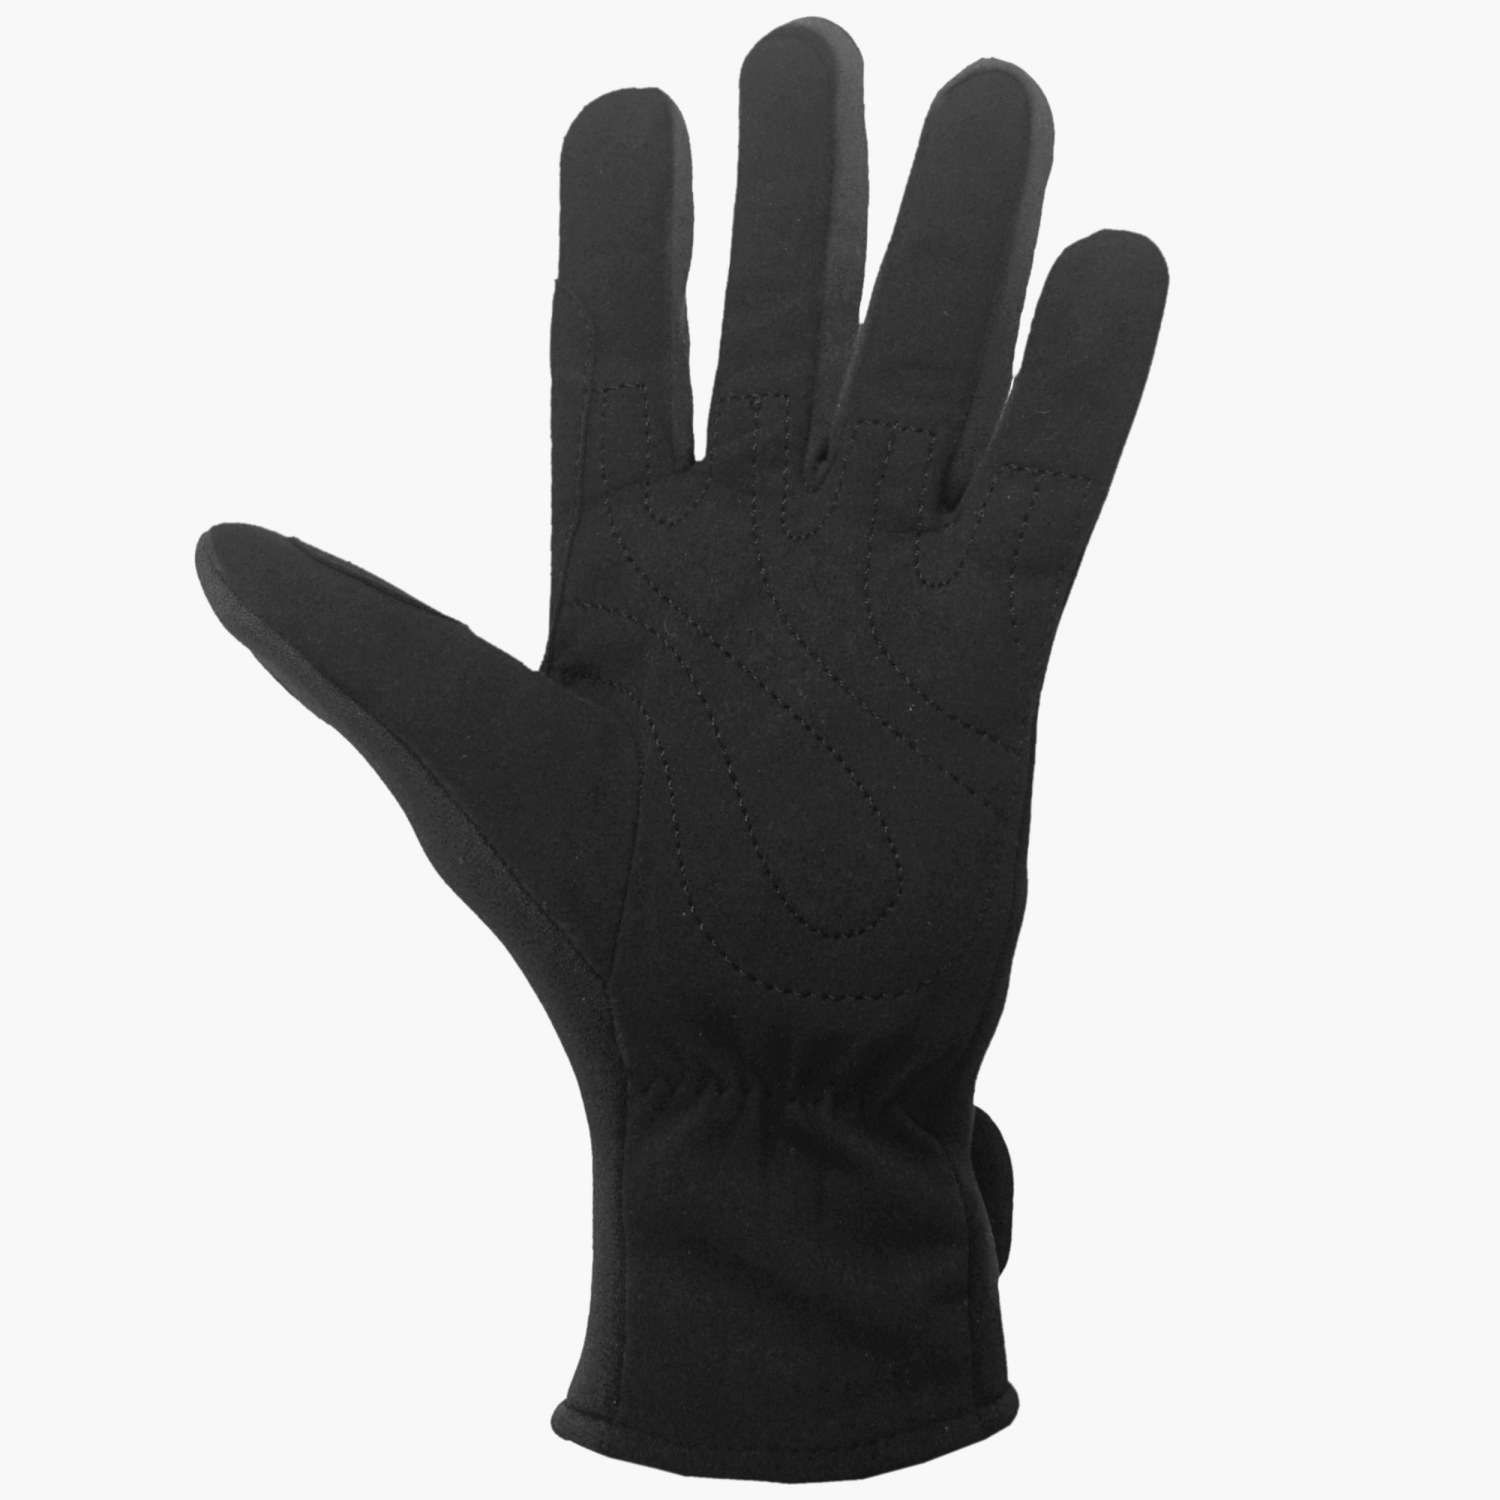 https://www.lomo.co.uk/wp-content/uploads/2022/06/Kayak-Gloves-4.jpg